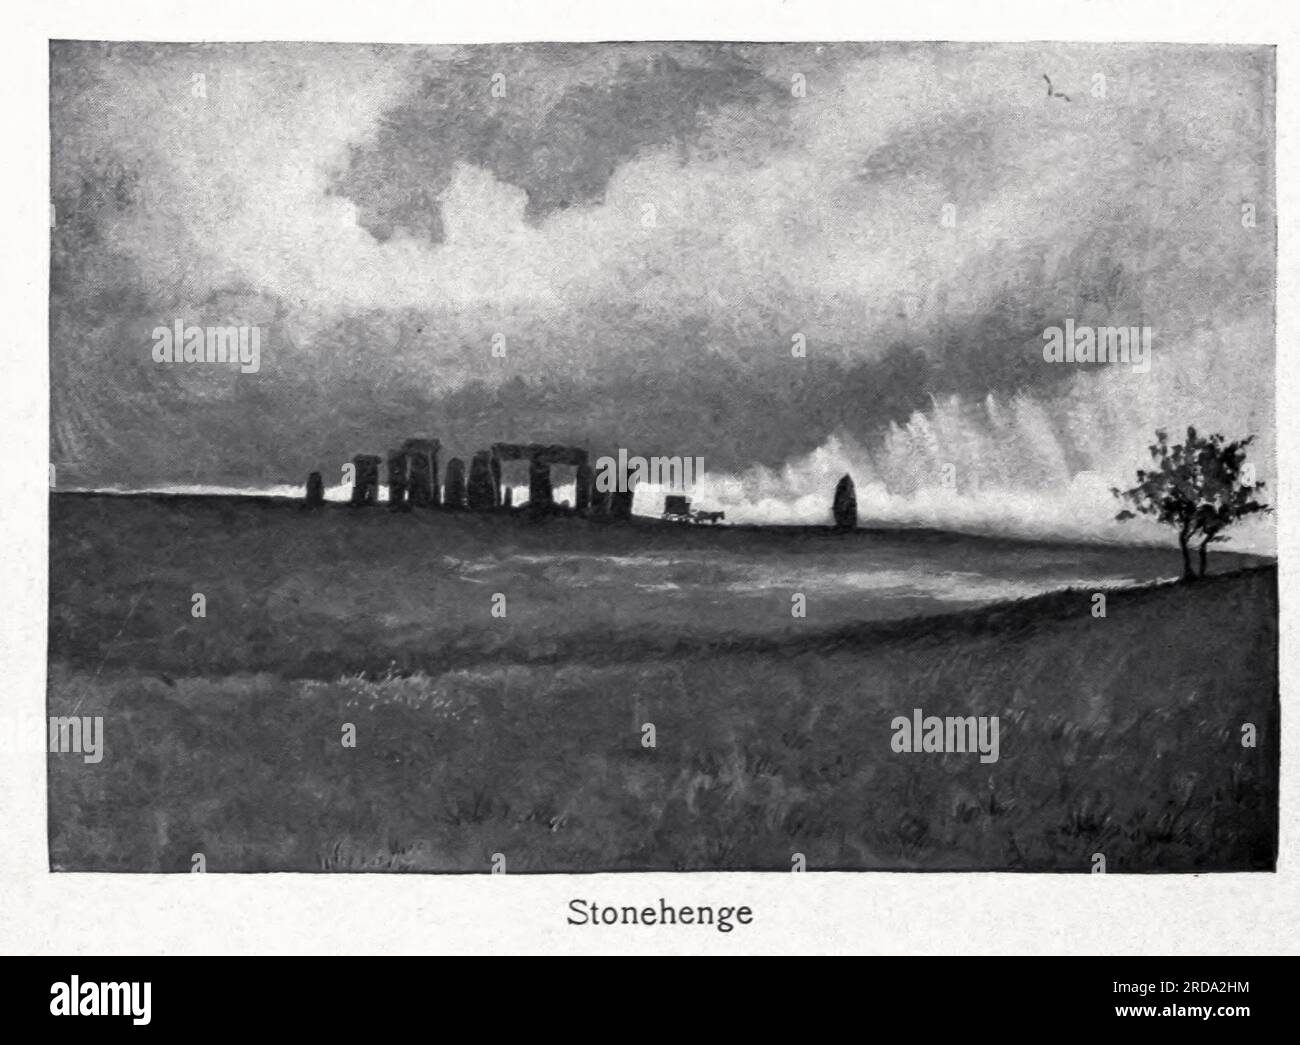 Stonehenge fotografia in bianco e nero dal libro ' Among English Hedgerows' di Clifton Johnson, 1865-1940 data di pubblicazione 1899 ristampata nel 1914 Publisher New York : The Macmillan co.; London, Macmillan and co., ltd. Foto Stock